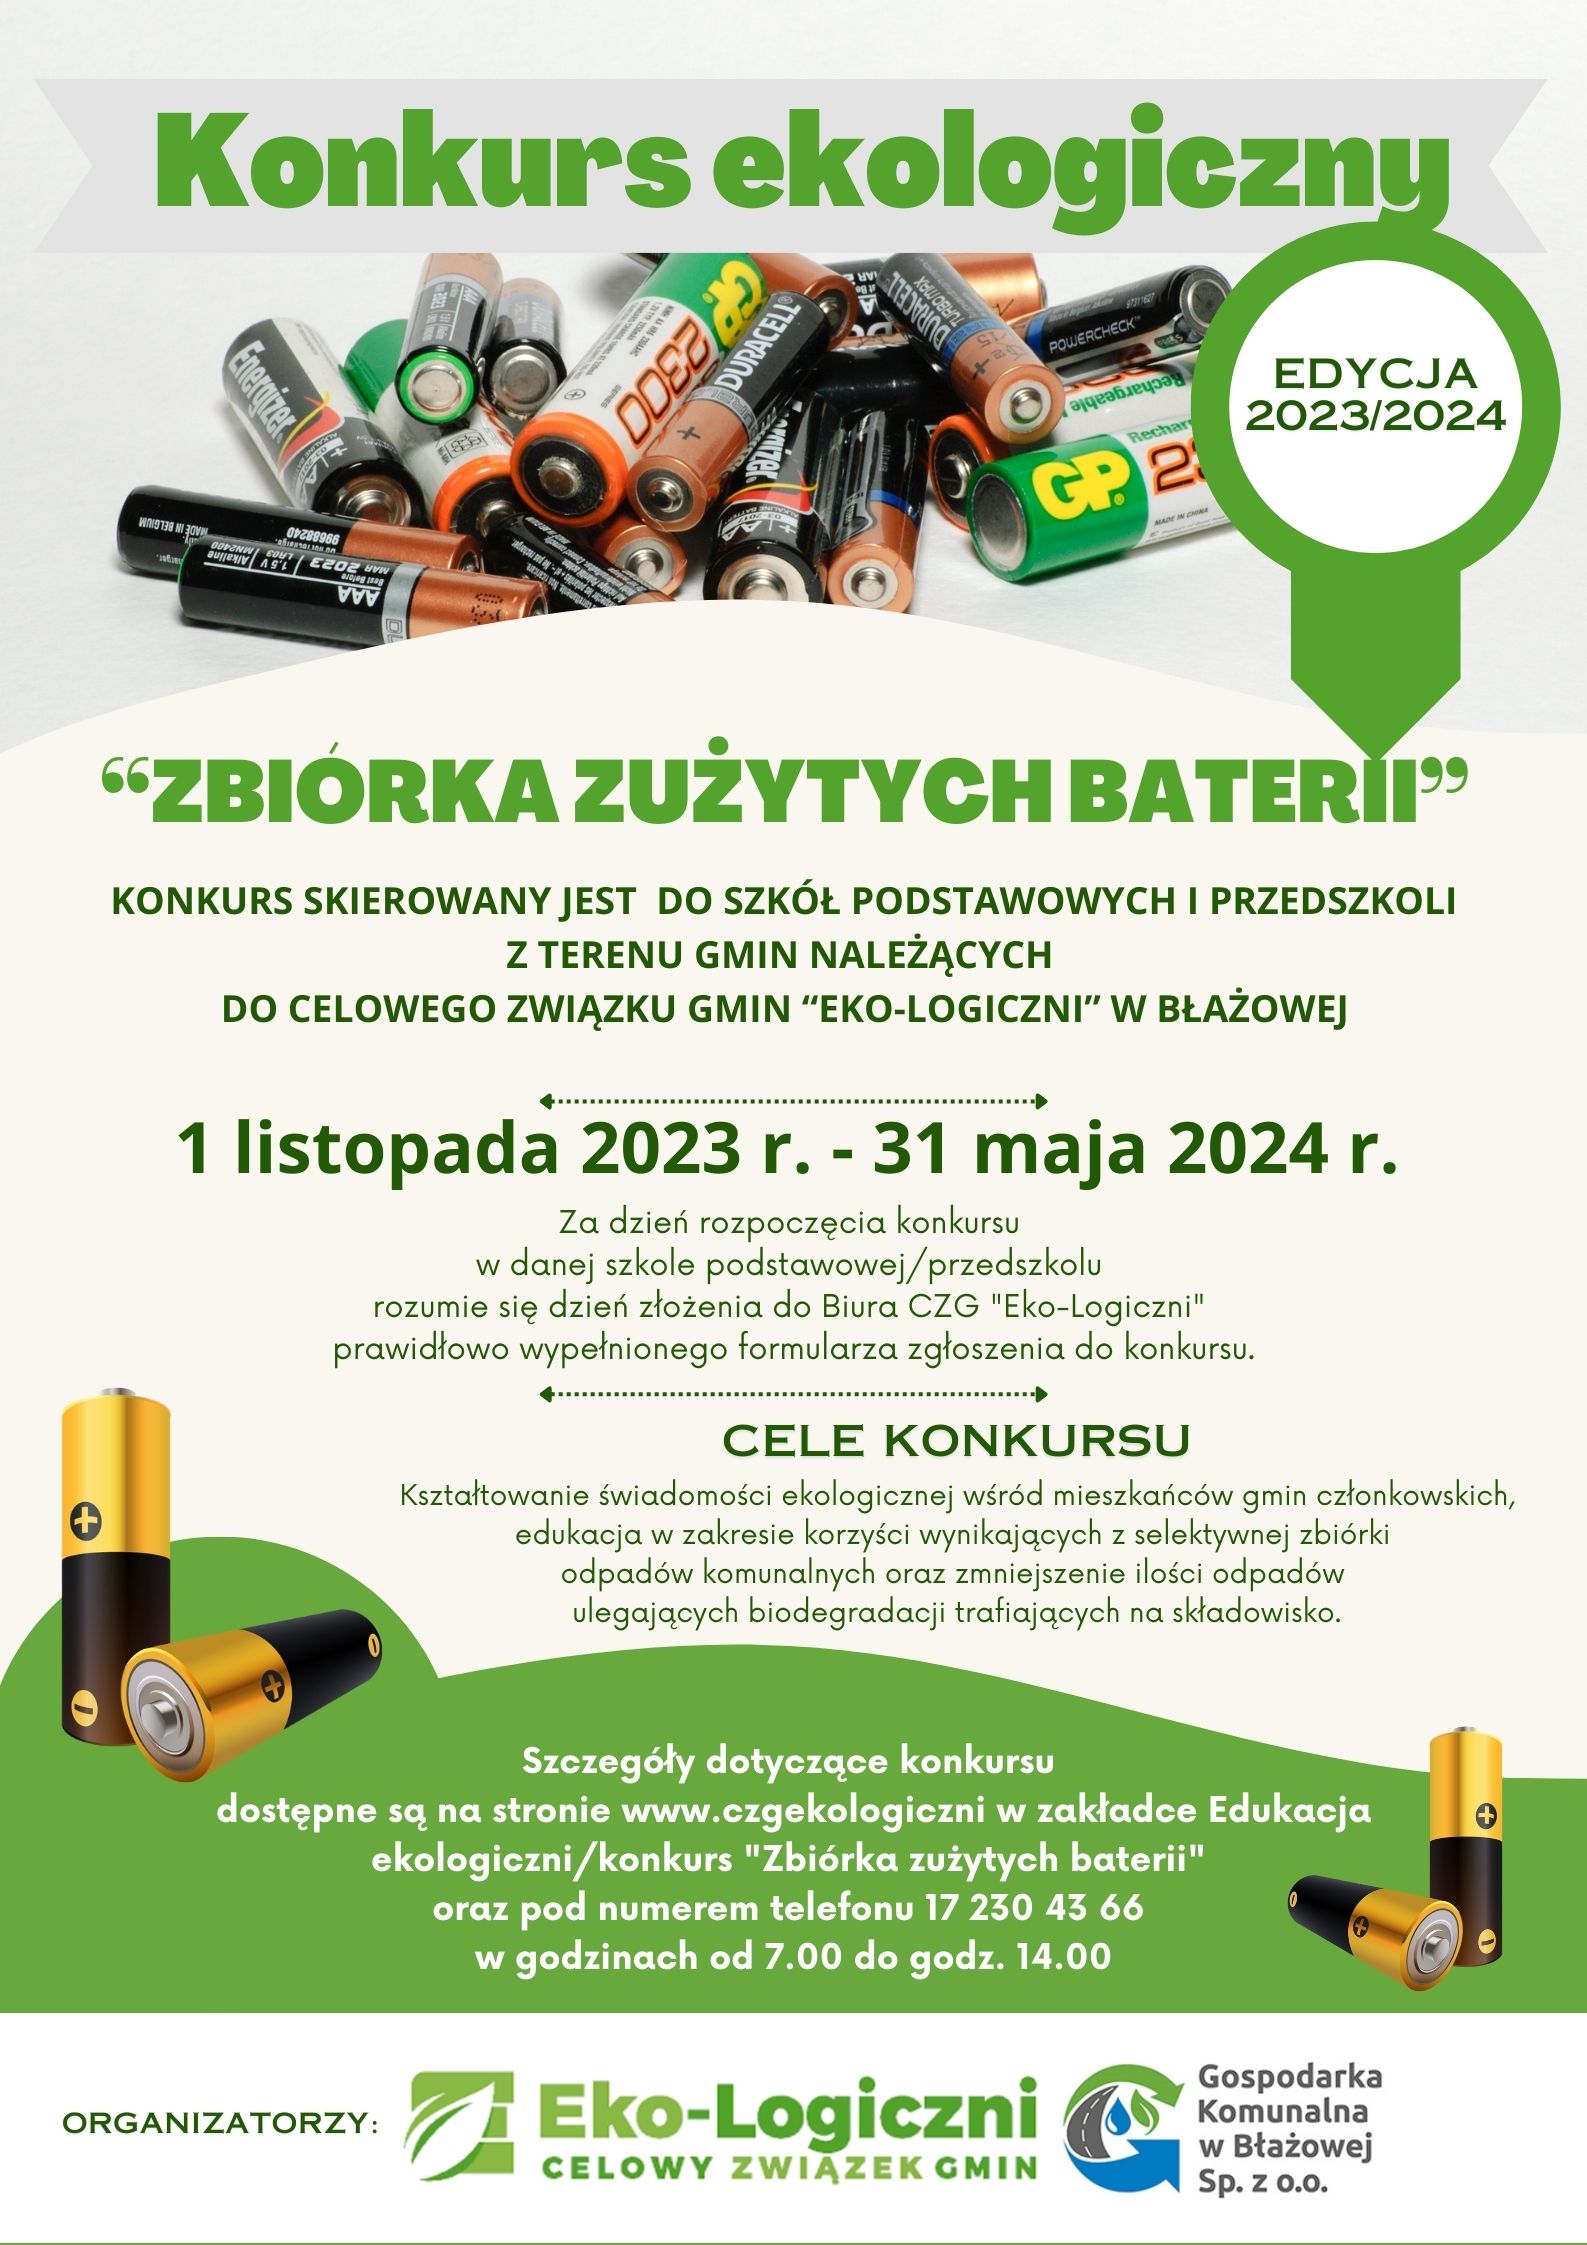 Konkurs Zbiórka zużytych baterii edycja 2023 2024